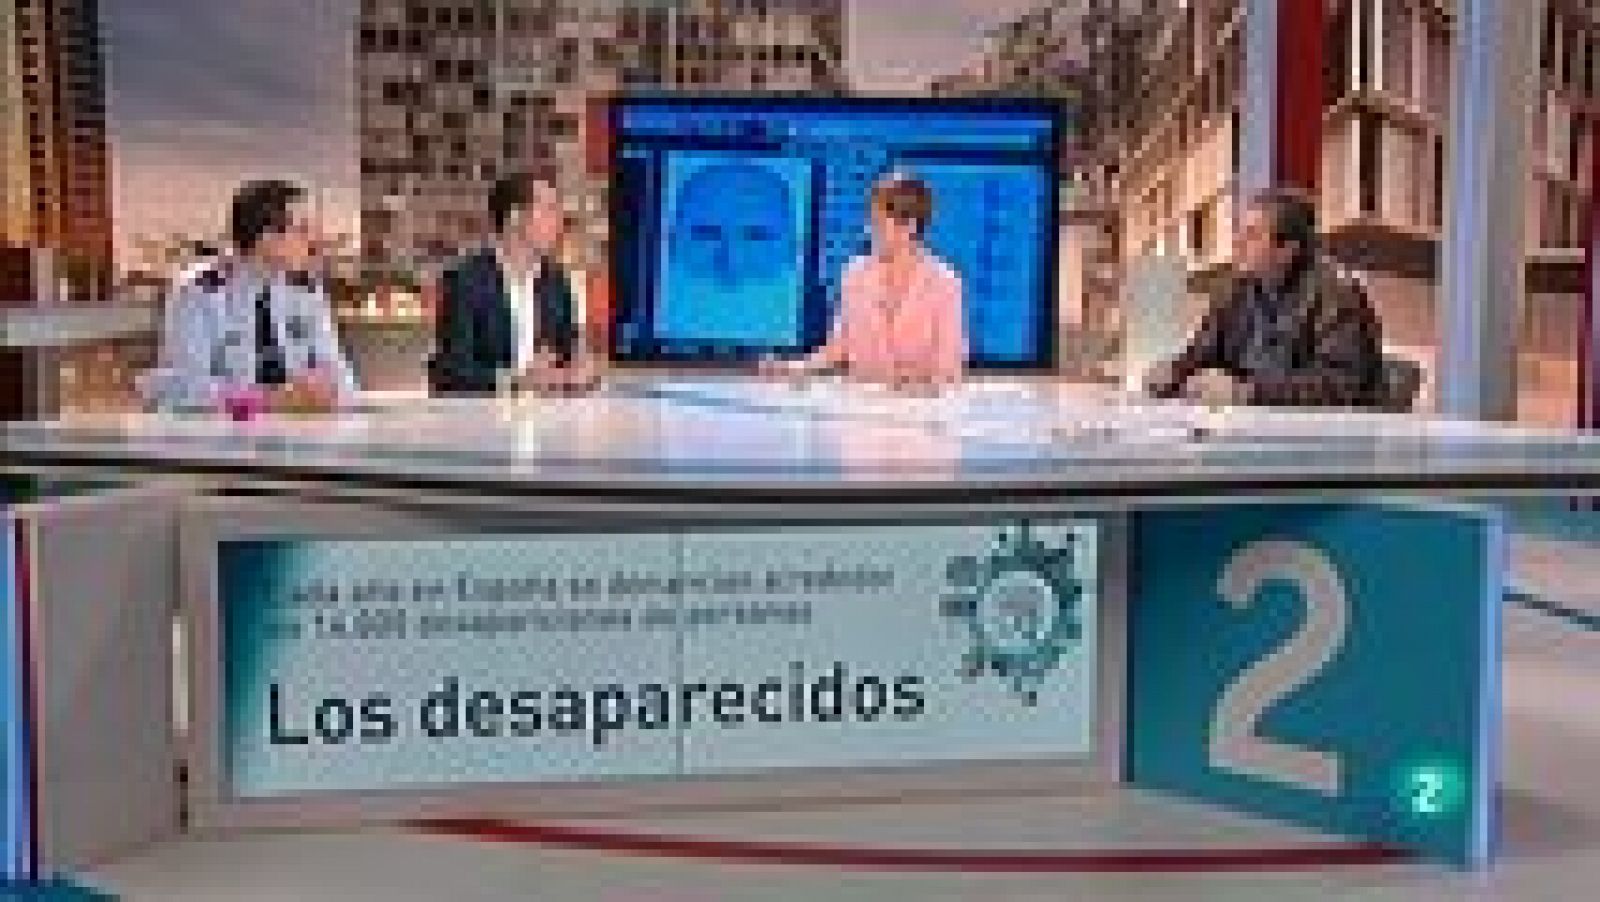 L'informatiu - Comunitat Valenciana: L'Informatiu - Comunitat Valenciana - 10/02/15 | RTVE Play